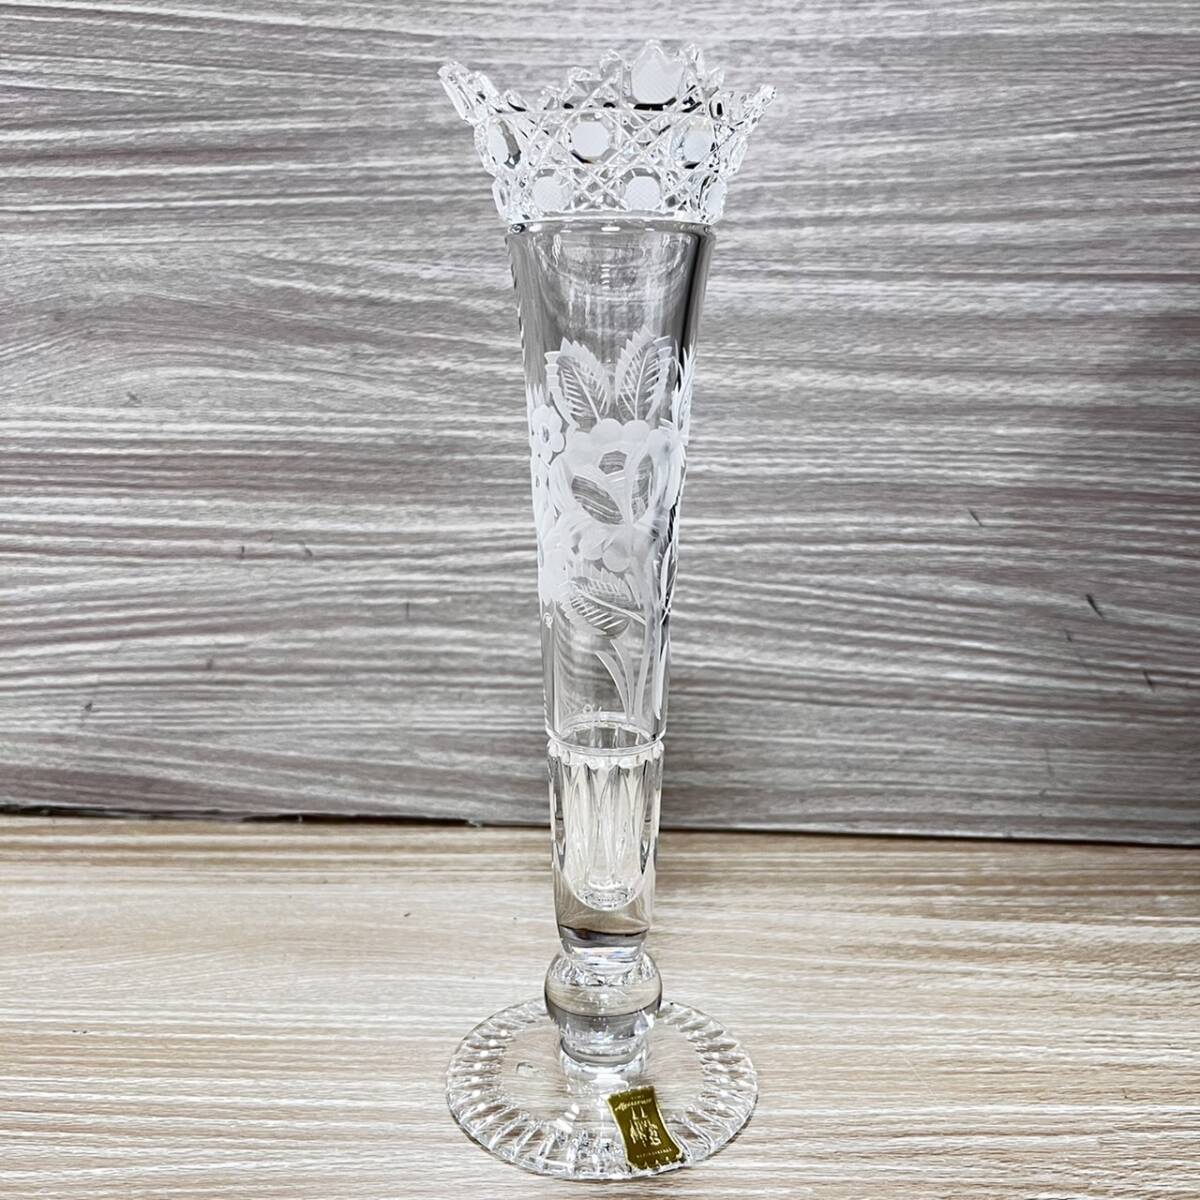  Meissen crystal Meissener Bleikristall ваза цветок основа один колесо . ваза для цветов цветочный принт с коробкой [19390